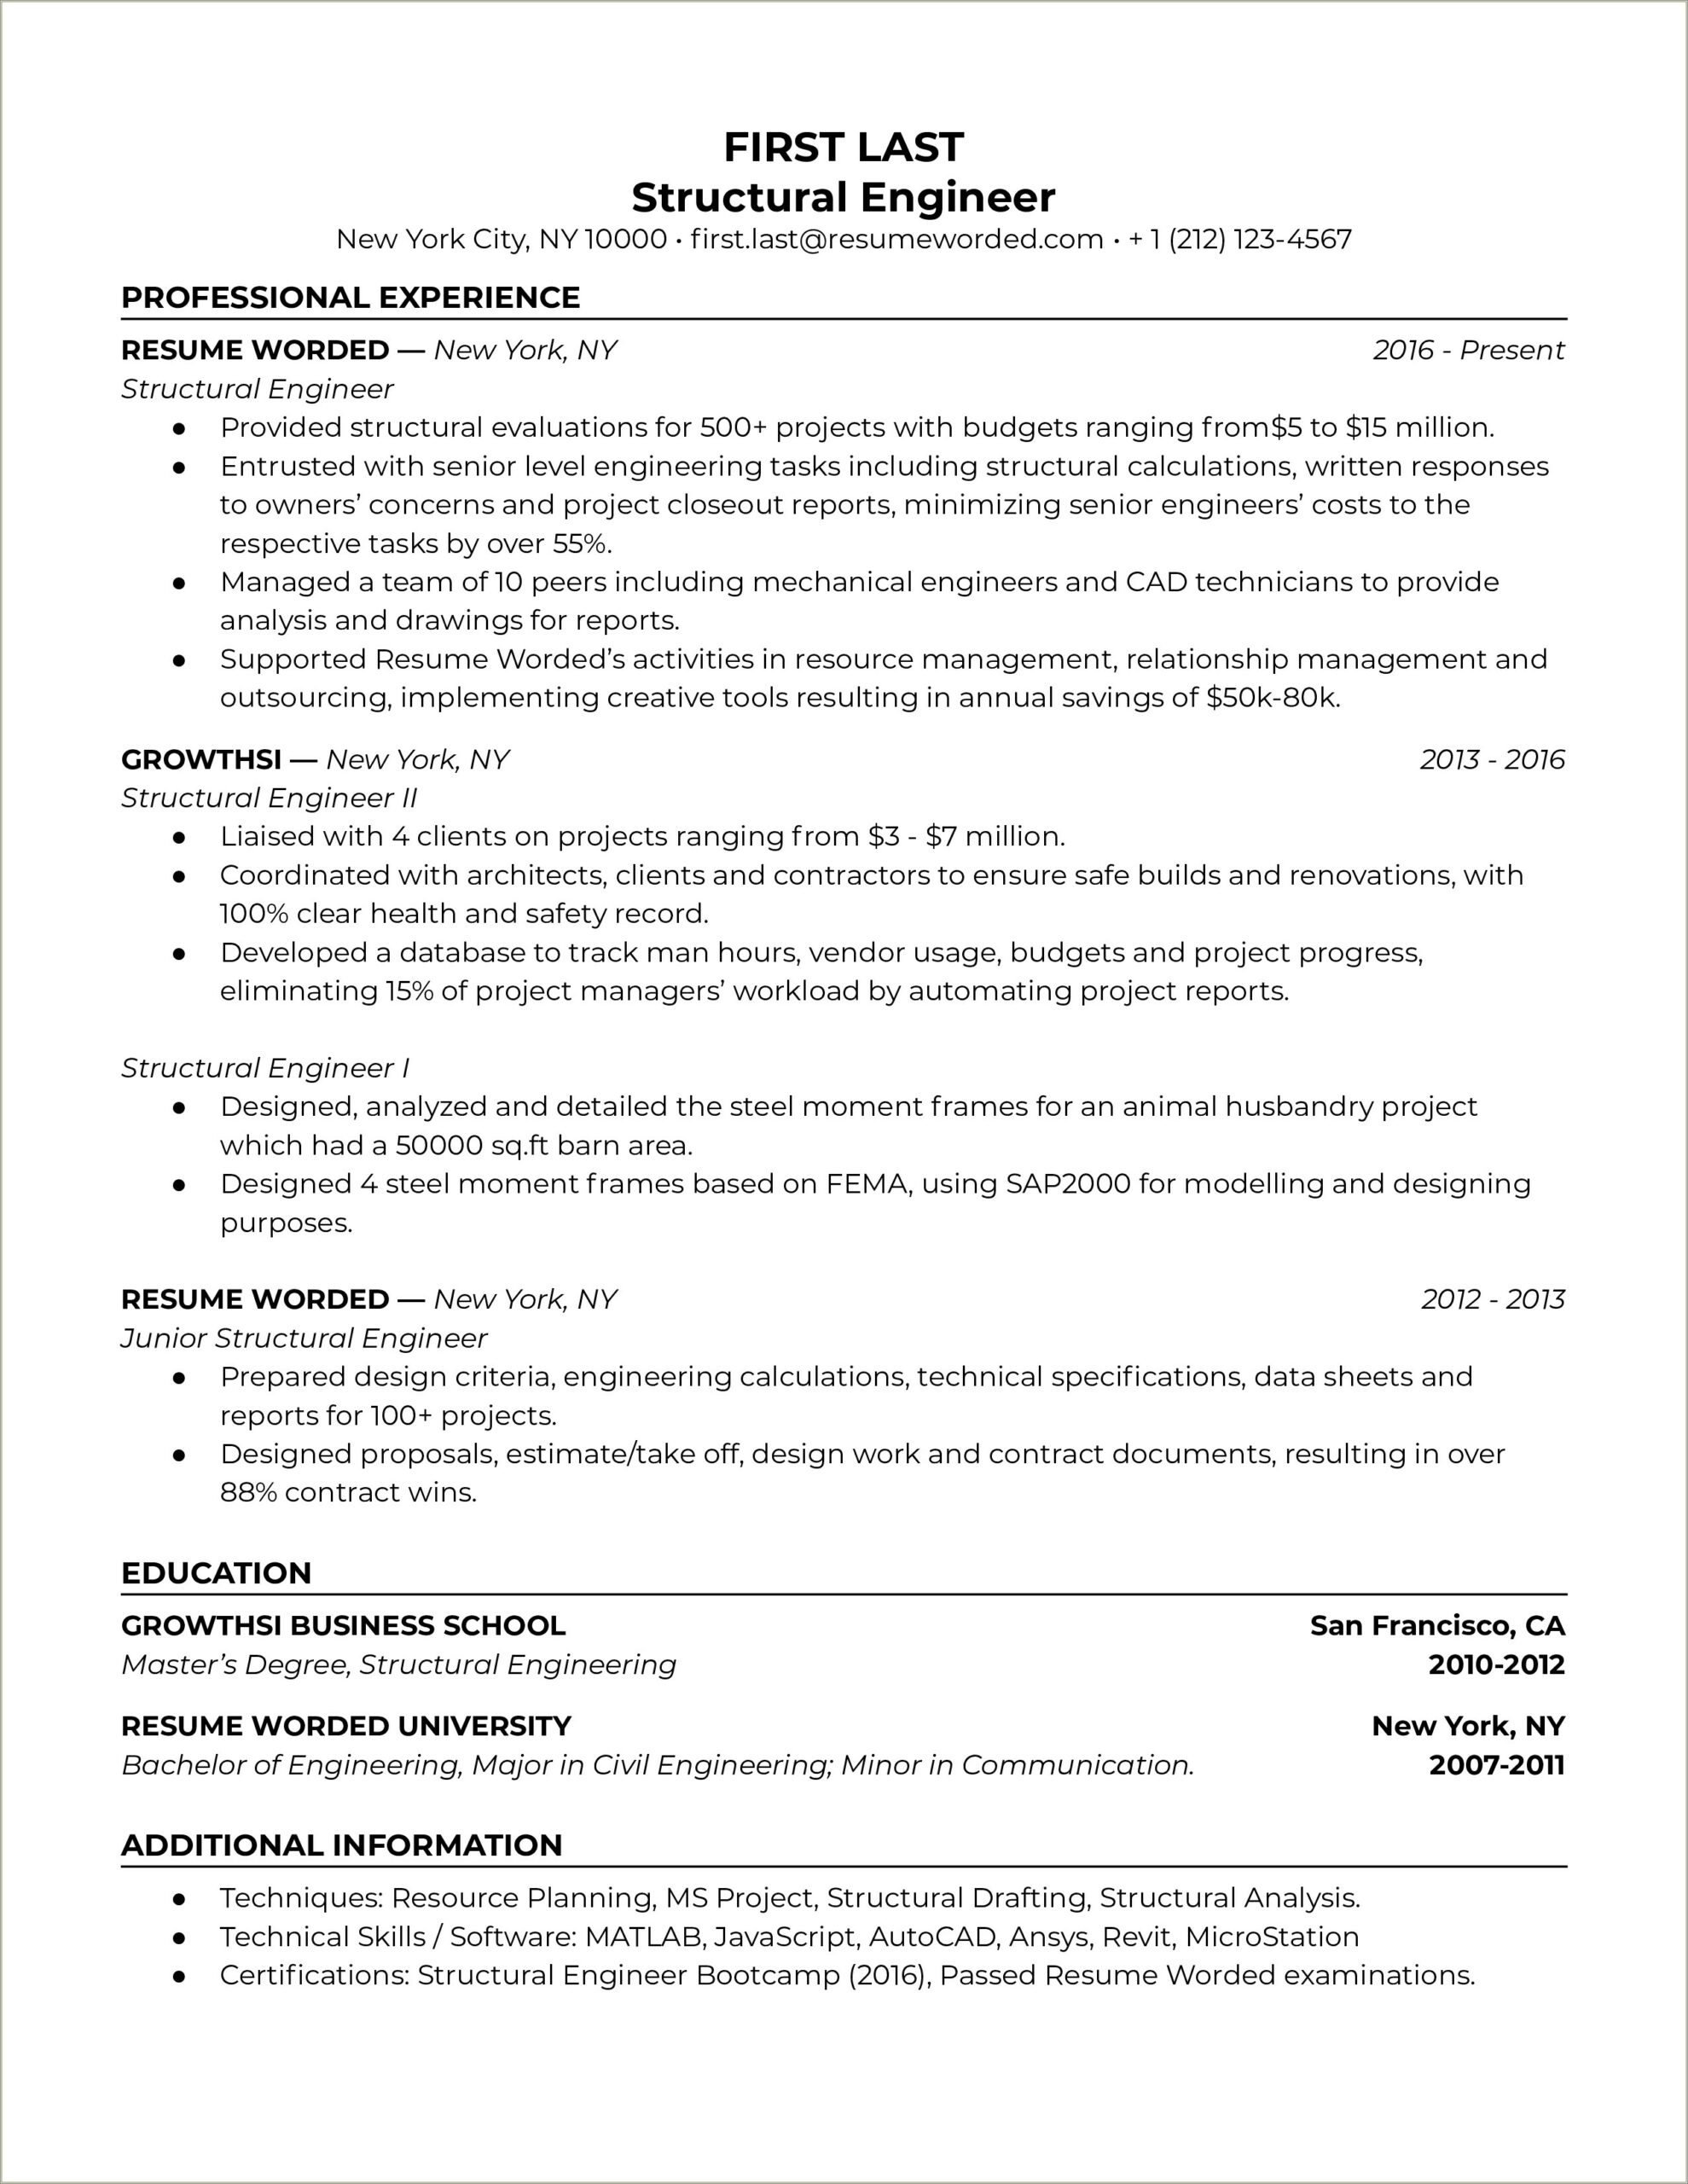 Sample Resume For Entry Level Civil Engineer